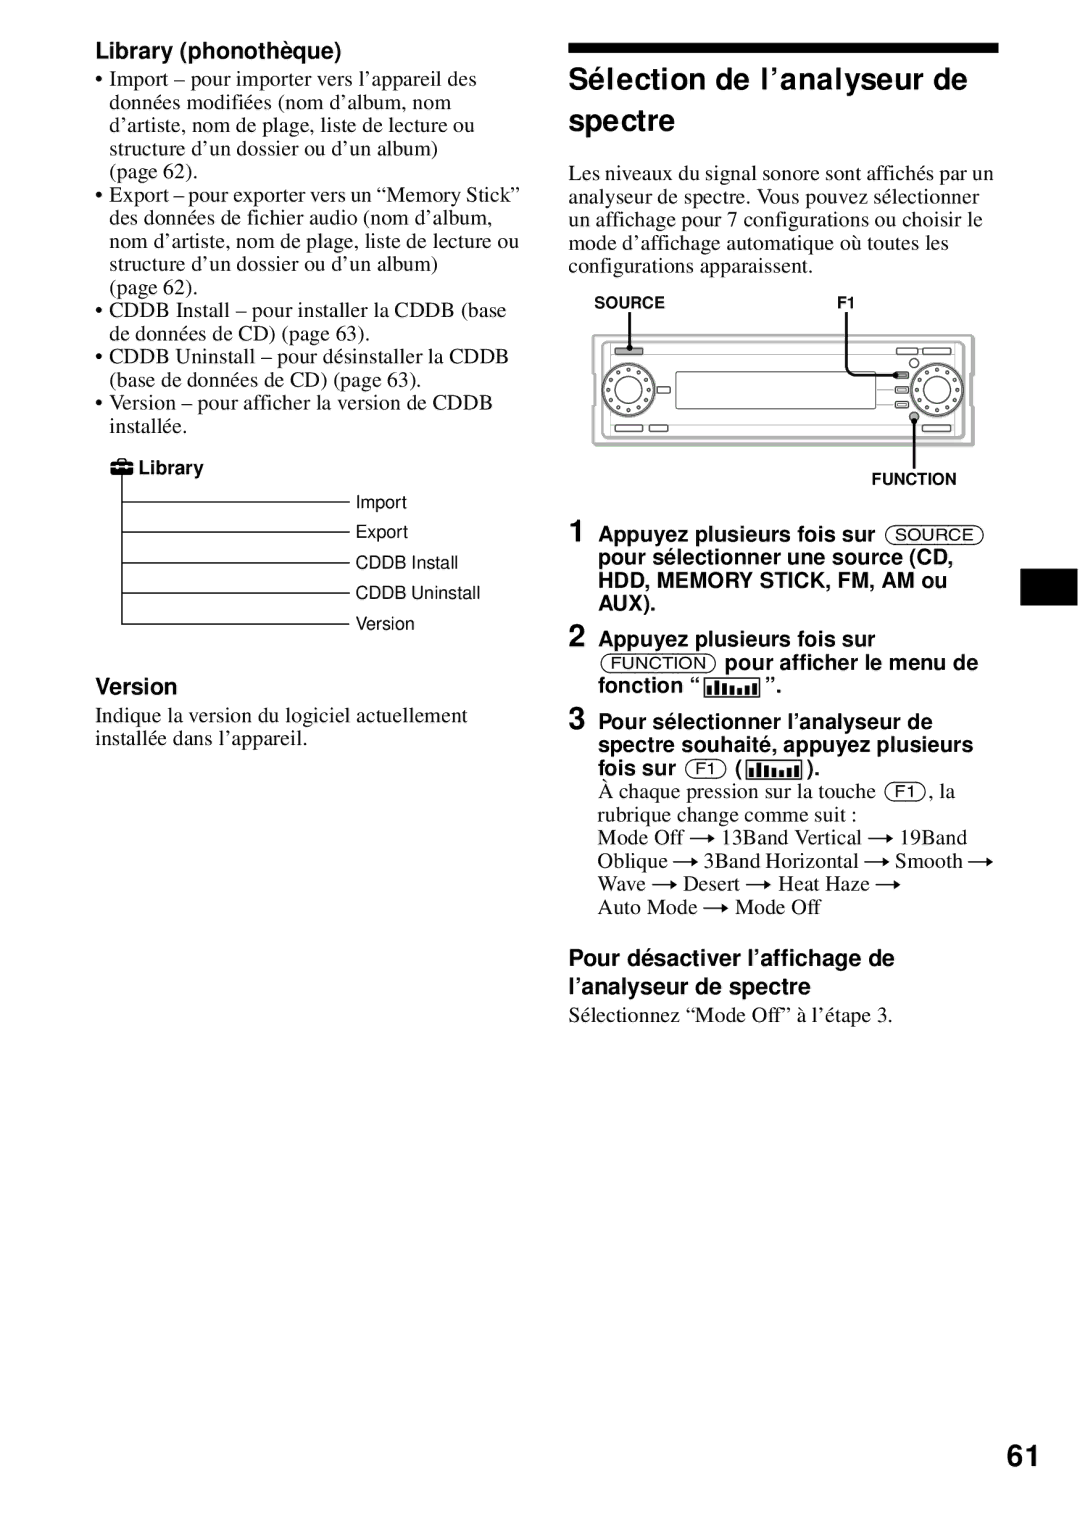 Sony MEX-1HD operating instructions Sélection de l’analyseur de spectre, Library phonothèque, Fonction, Fois sur F1 